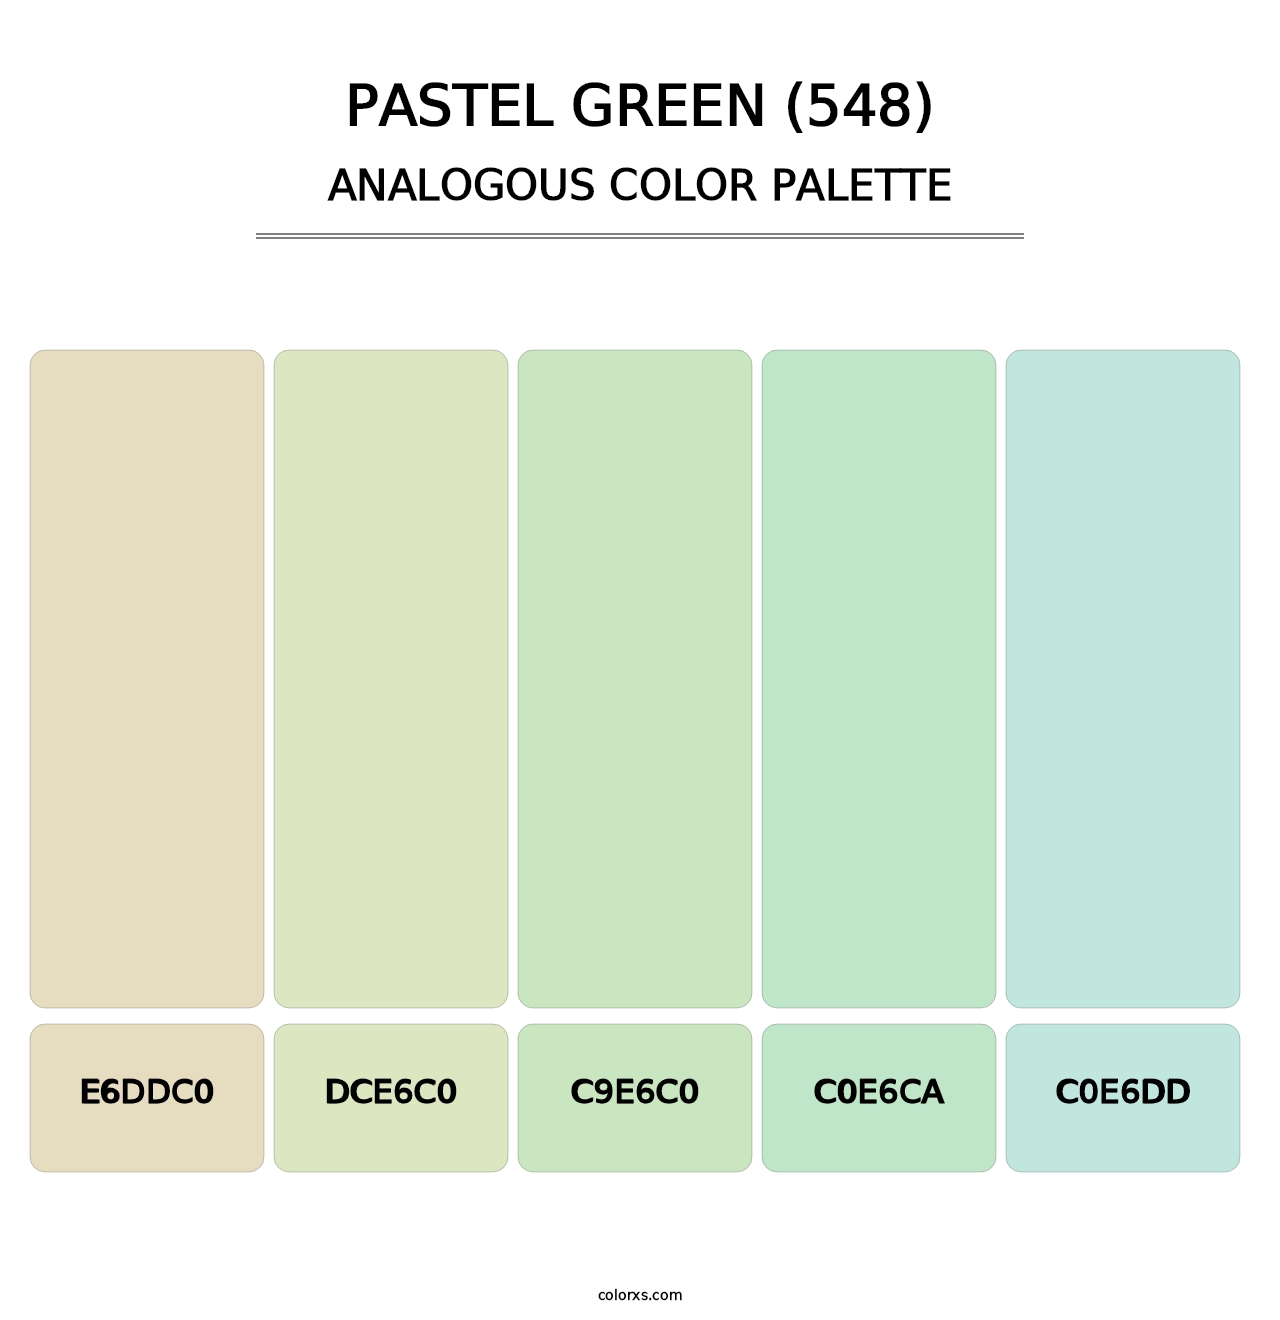 Pastel Green (548) - Analogous Color Palette